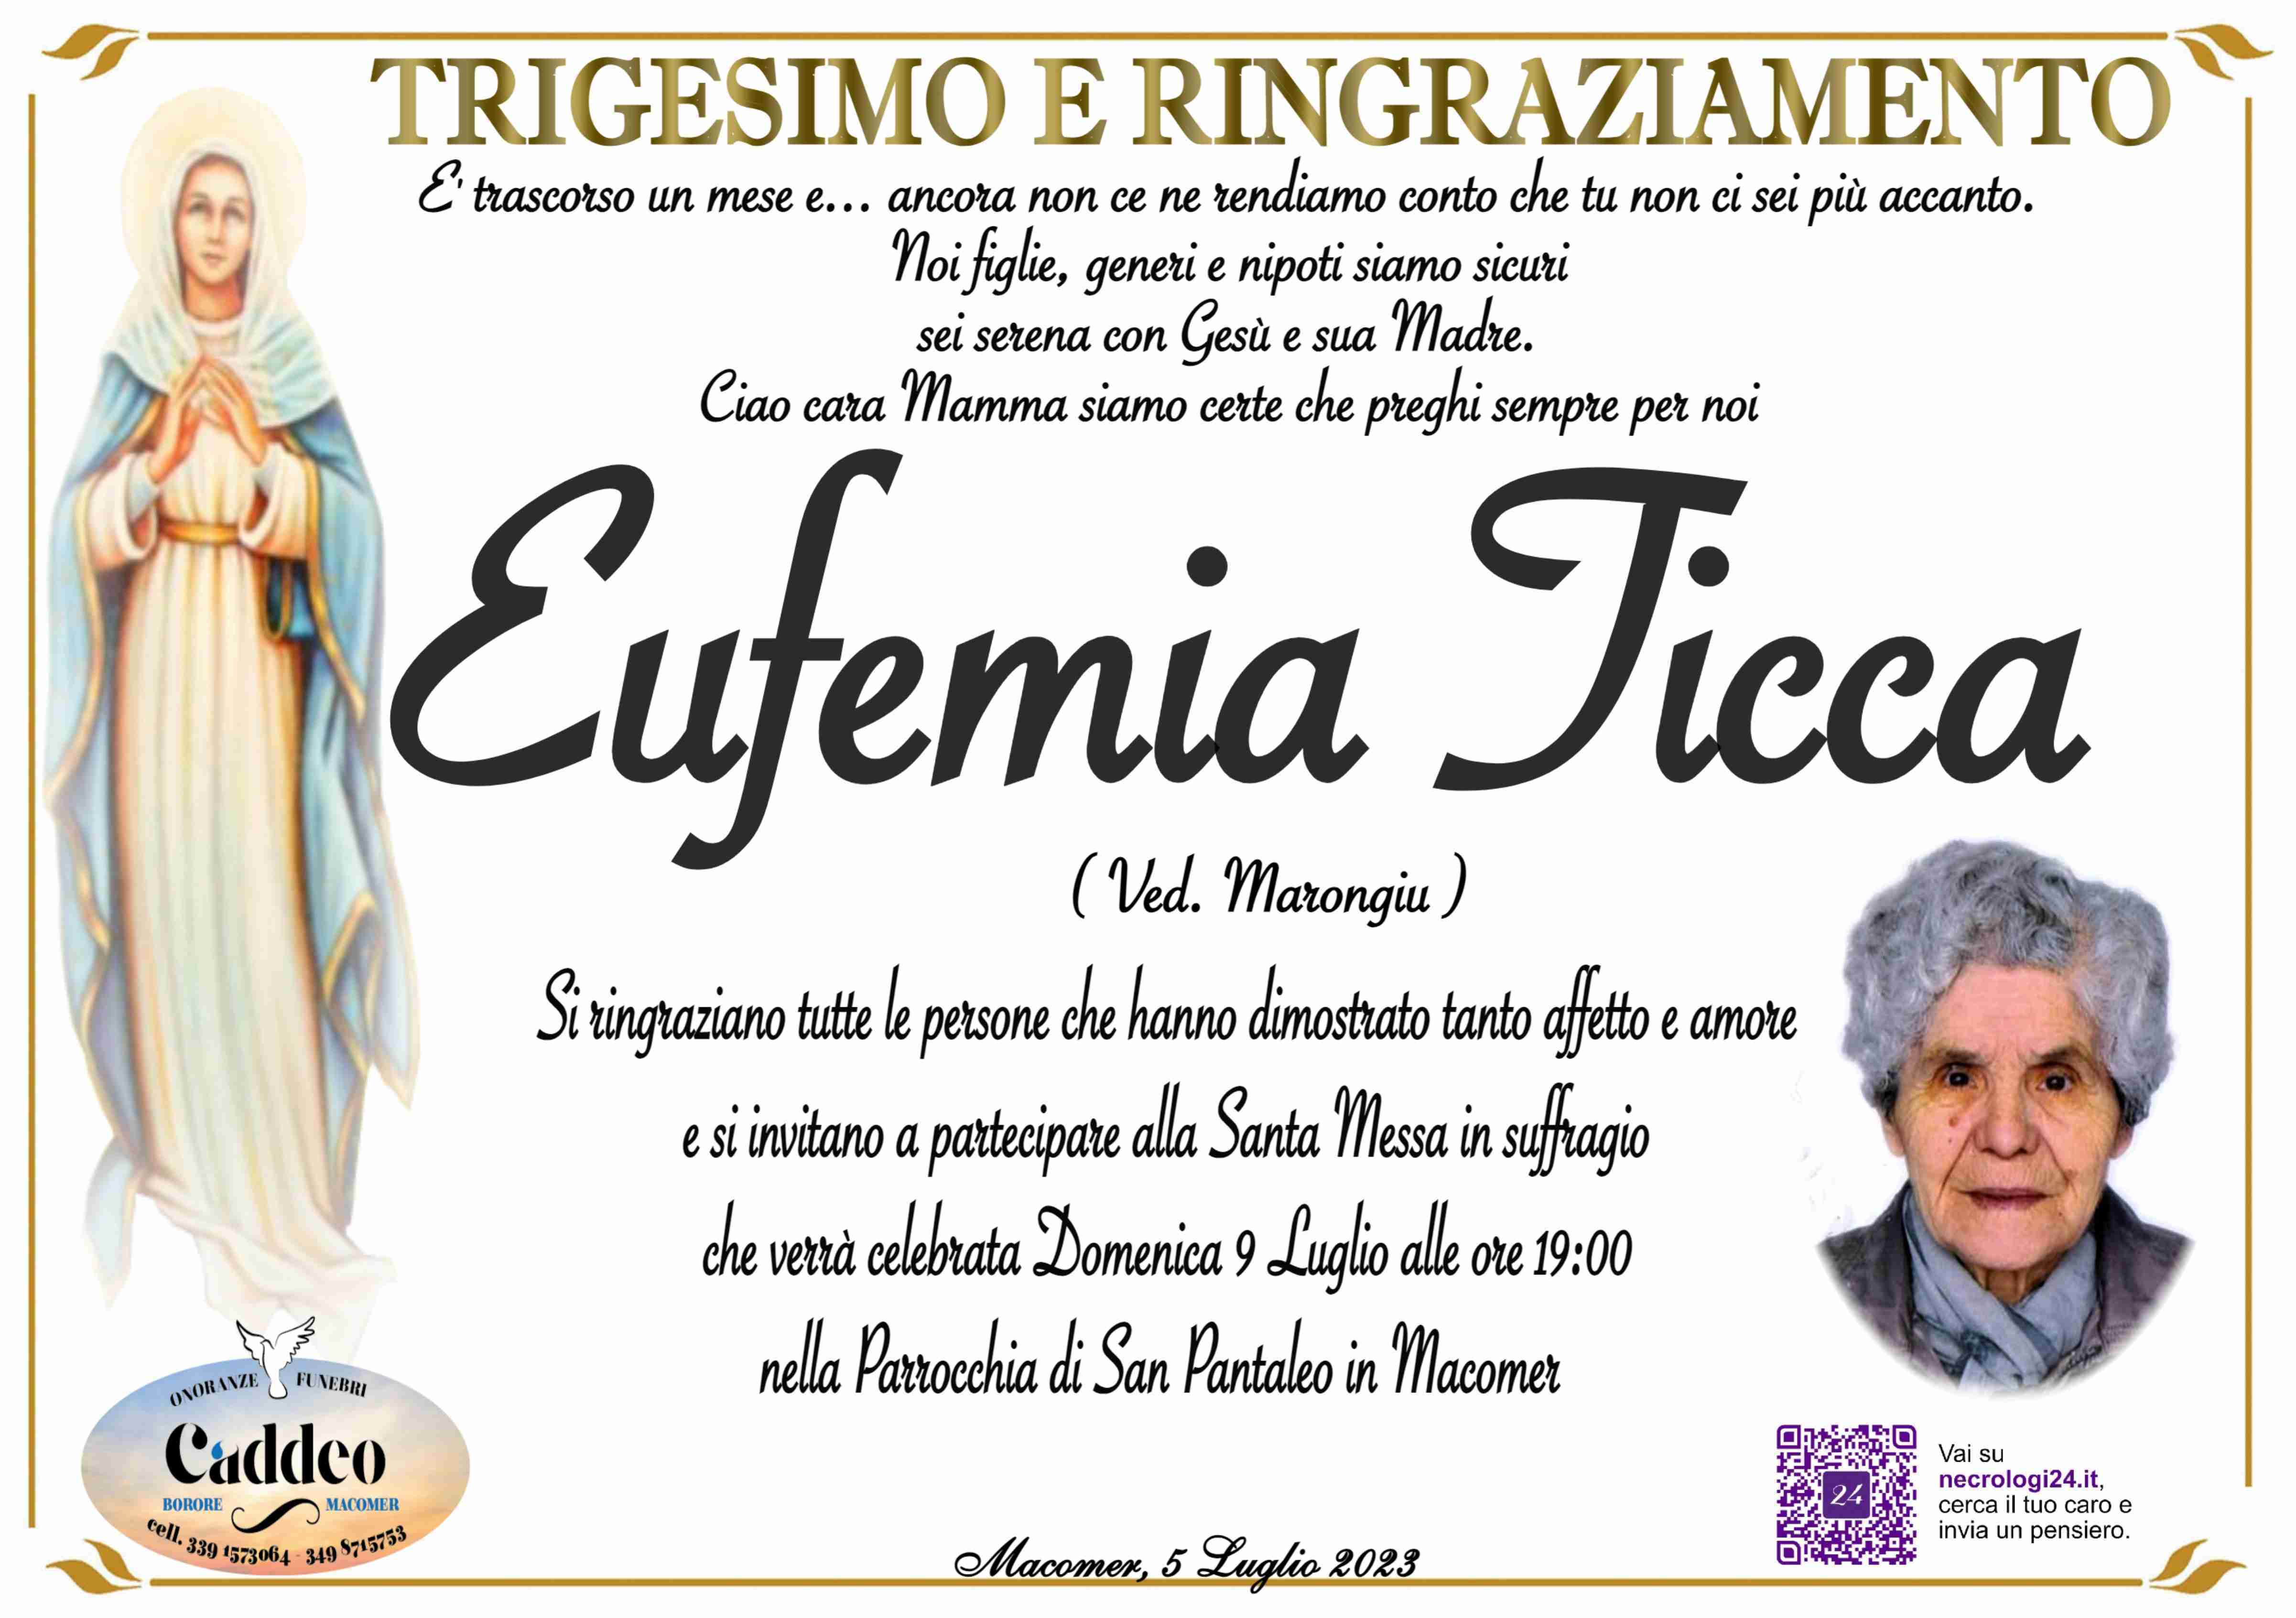 Eufemia Ticca